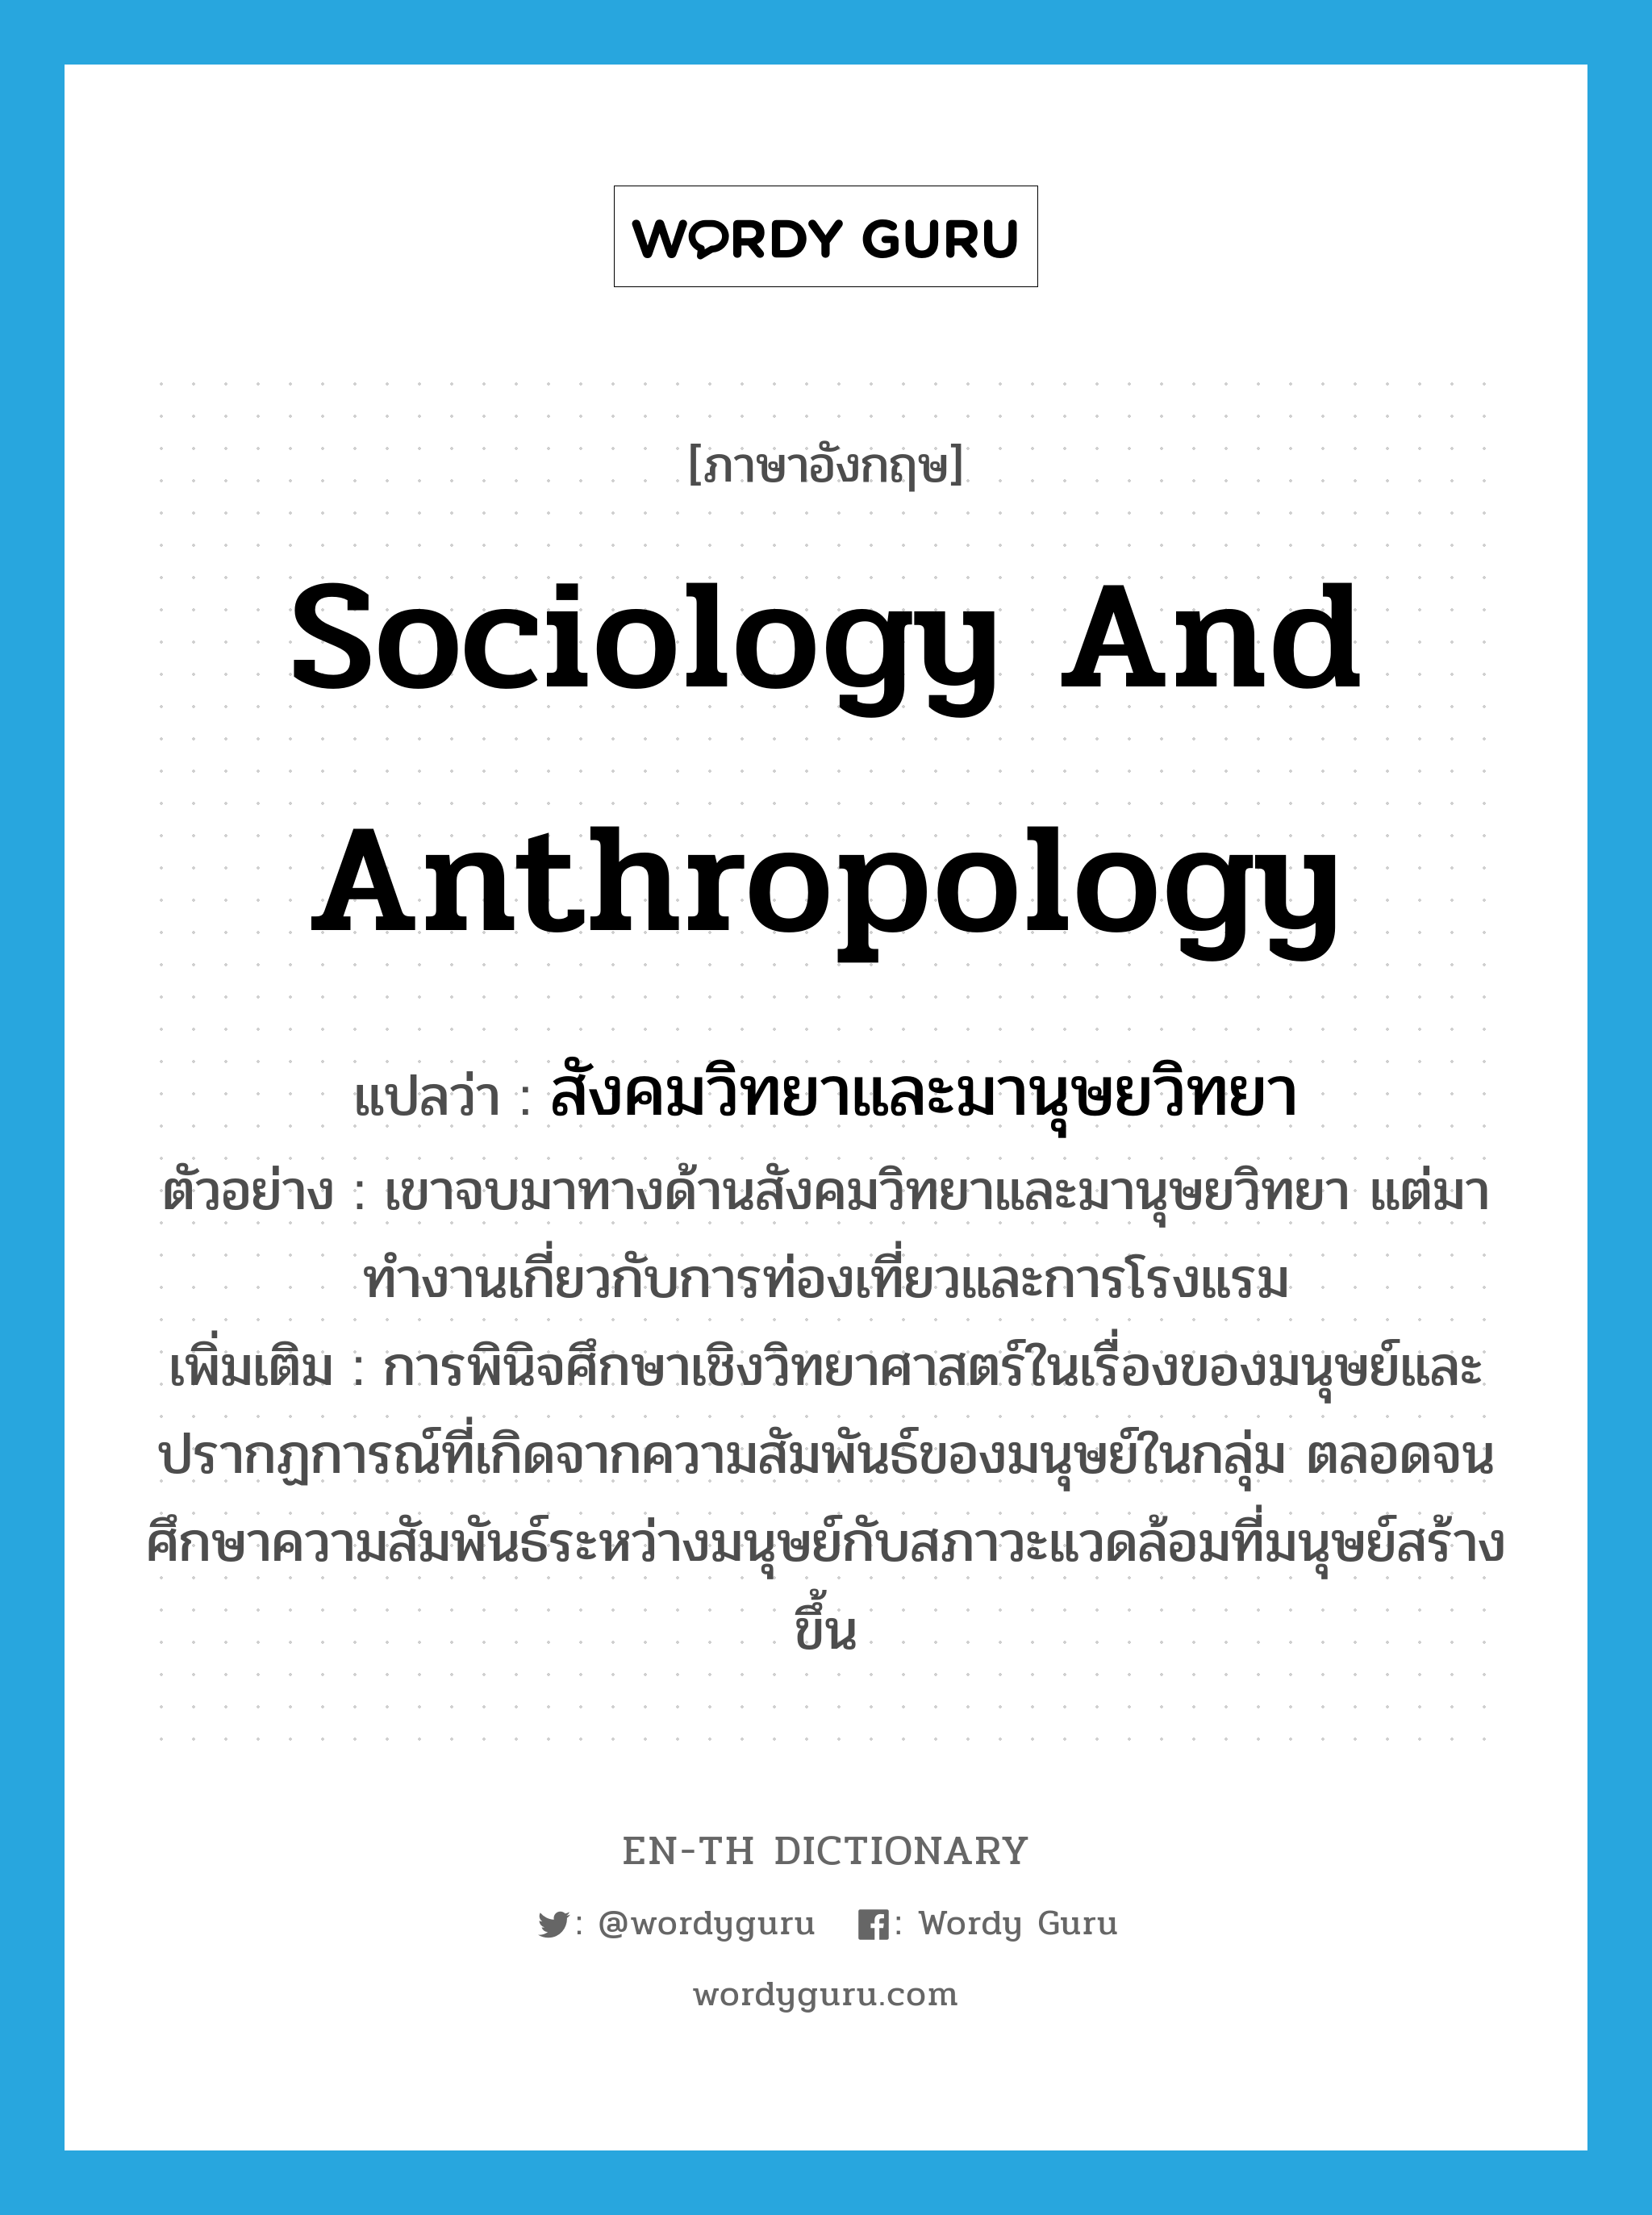 sociology and anthropology แปลว่า?, คำศัพท์ภาษาอังกฤษ sociology and anthropology แปลว่า สังคมวิทยาและมานุษยวิทยา ประเภท N ตัวอย่าง เขาจบมาทางด้านสังคมวิทยาและมานุษยวิทยา แต่มาทำงานเกี่ยวกับการท่องเที่ยวและการโรงแรม เพิ่มเติม การพินิจศึกษาเชิงวิทยาศาสตร์ในเรื่องของมนุษย์และปรากฏการณ์ที่เกิดจากความสัมพันธ์ของมนุษย์ในกลุ่ม ตลอดจนศึกษาความสัมพันธ์ระหว่างมนุษย์กับสภาวะแวดล้อมที่มนุษย์สร้างขึ้น หมวด N